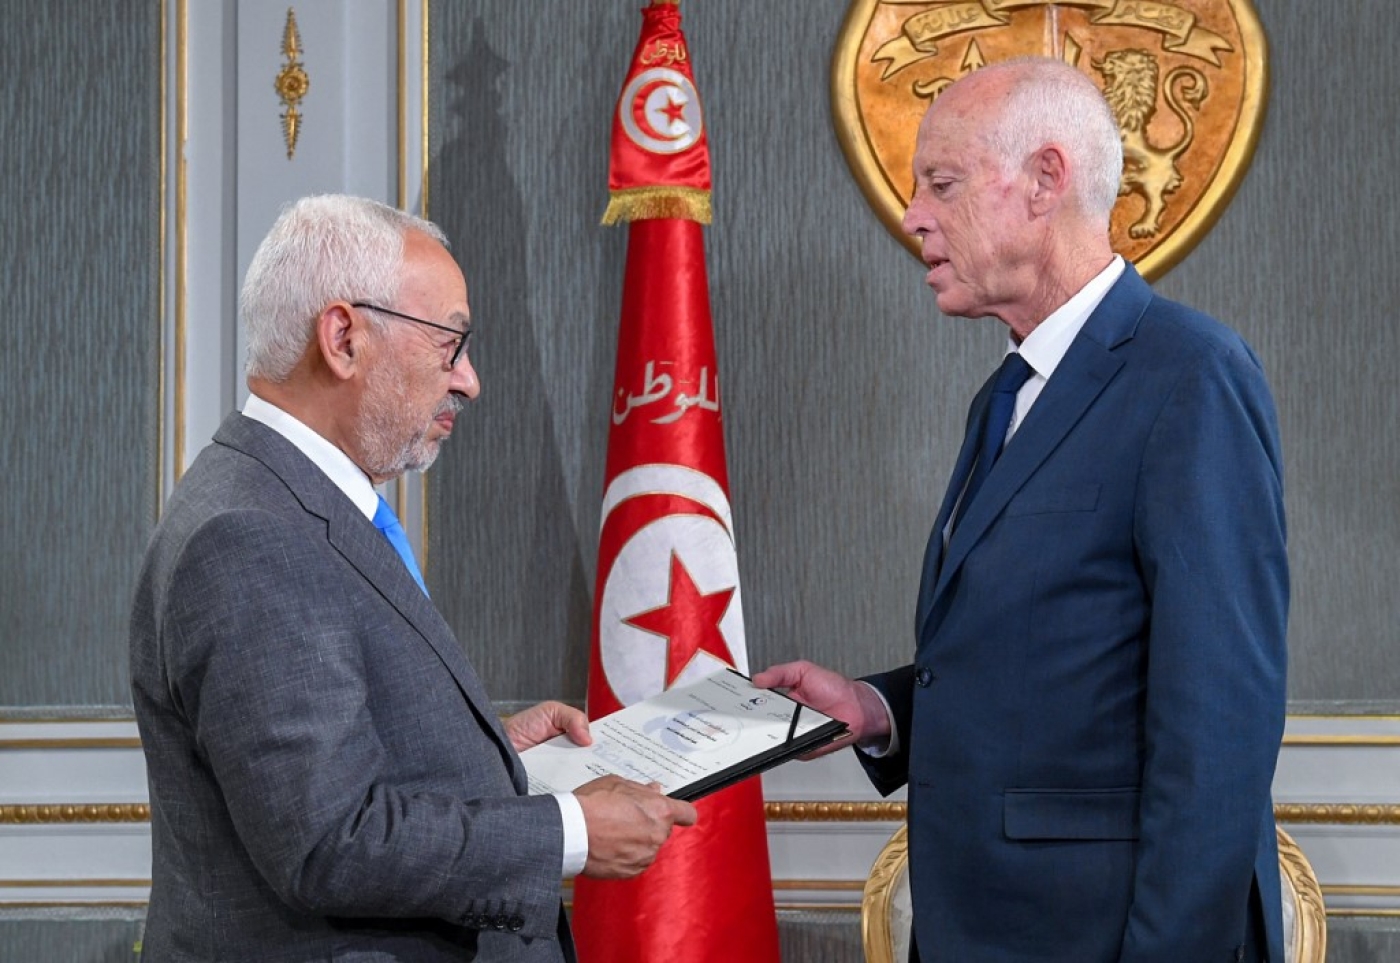 Le président tunisien Kais Saied avec le dirigeant d’Ennahdha et président du Parlement Rached Ghannouchi au palais présidentiel de Carthage, le 15 novembre 2019 (AFP)